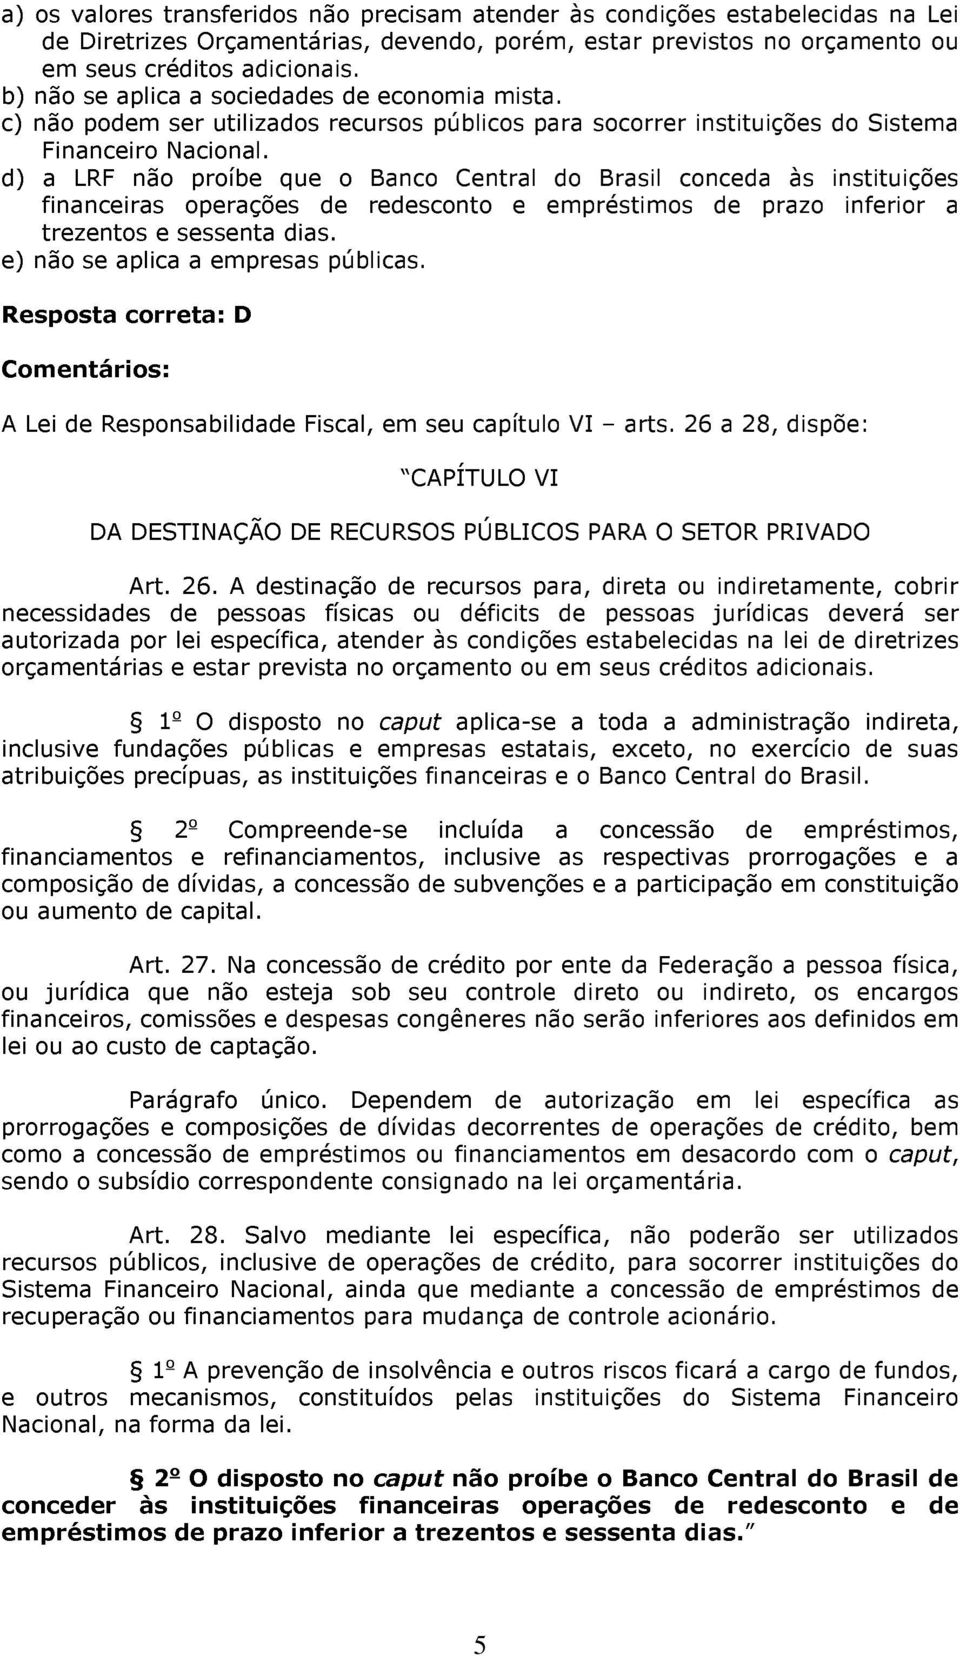 d) a LRF não proíbe que o Banco Central do Brasil conceda às instituições financeiras operações de redesconto e empréstimos de prazo inferior a trezentos e sessenta dias.